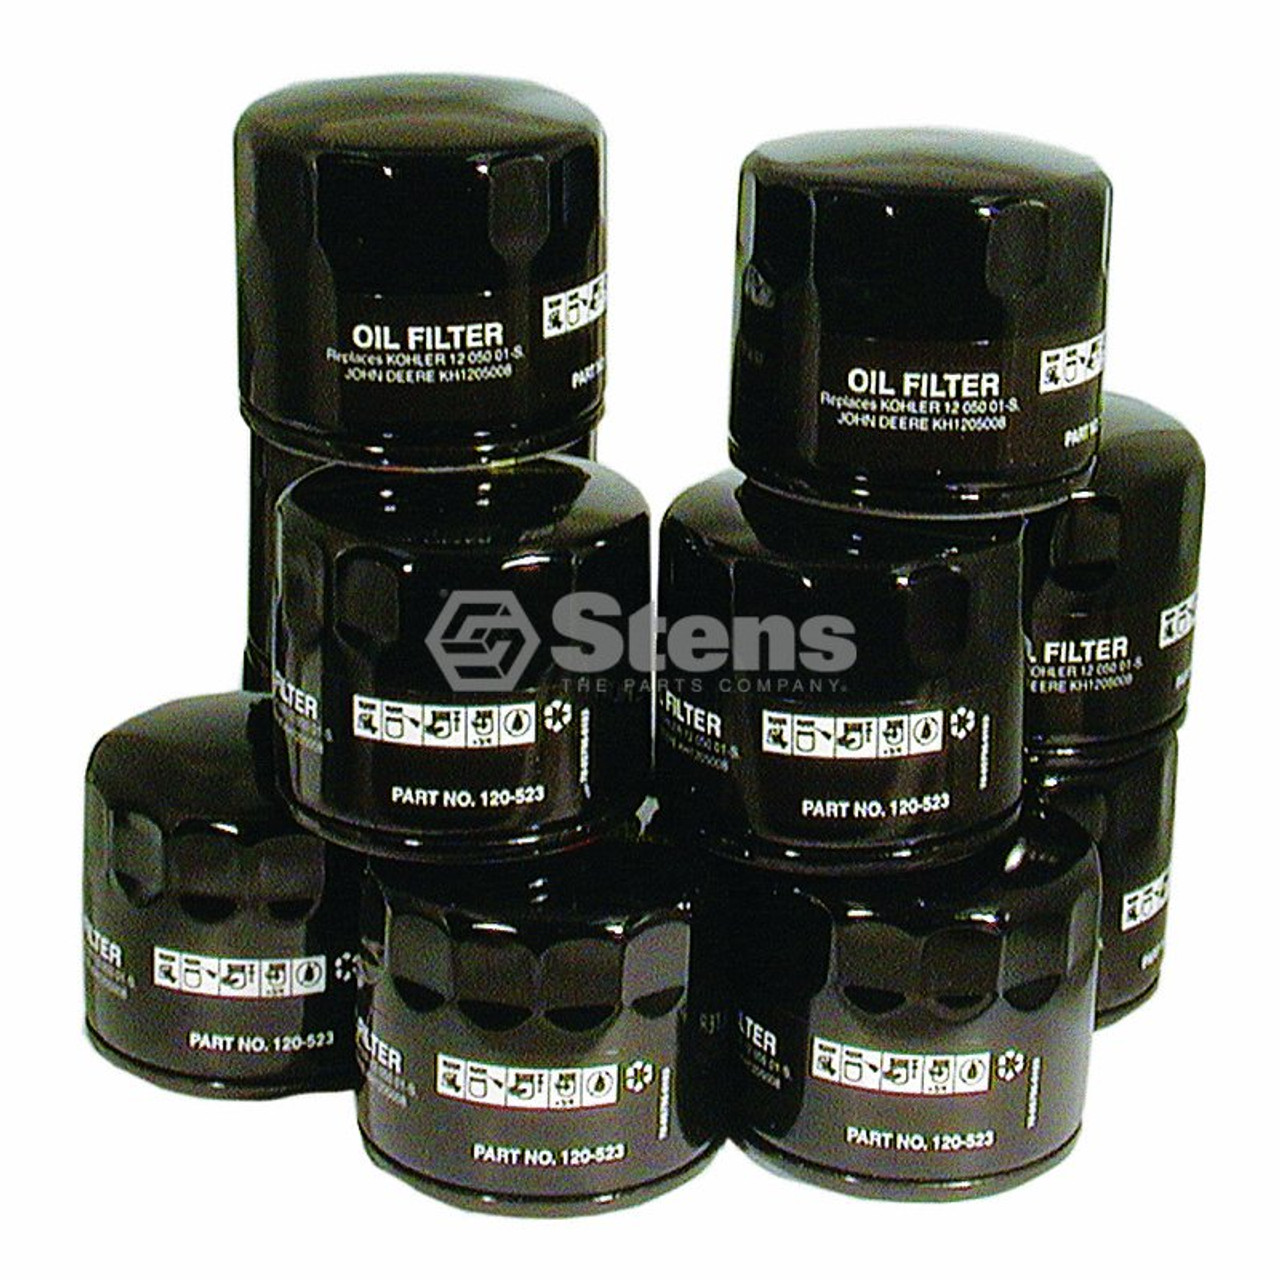 Stens 120-523 Oil Filter Replaces Kohler 12 050 01-s John Deere Am125424 Gravely for sale online